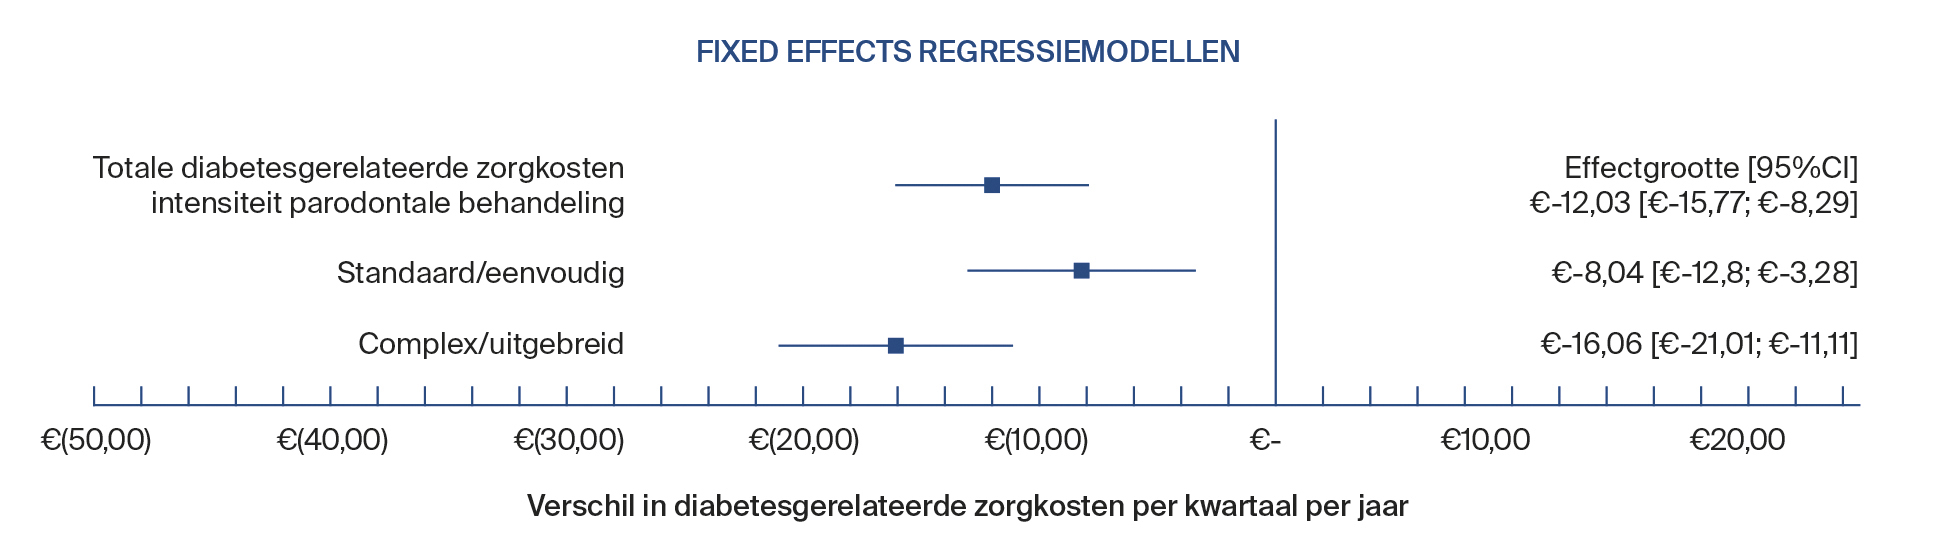 Fixed effect regressiemodellen parodontale behandeling